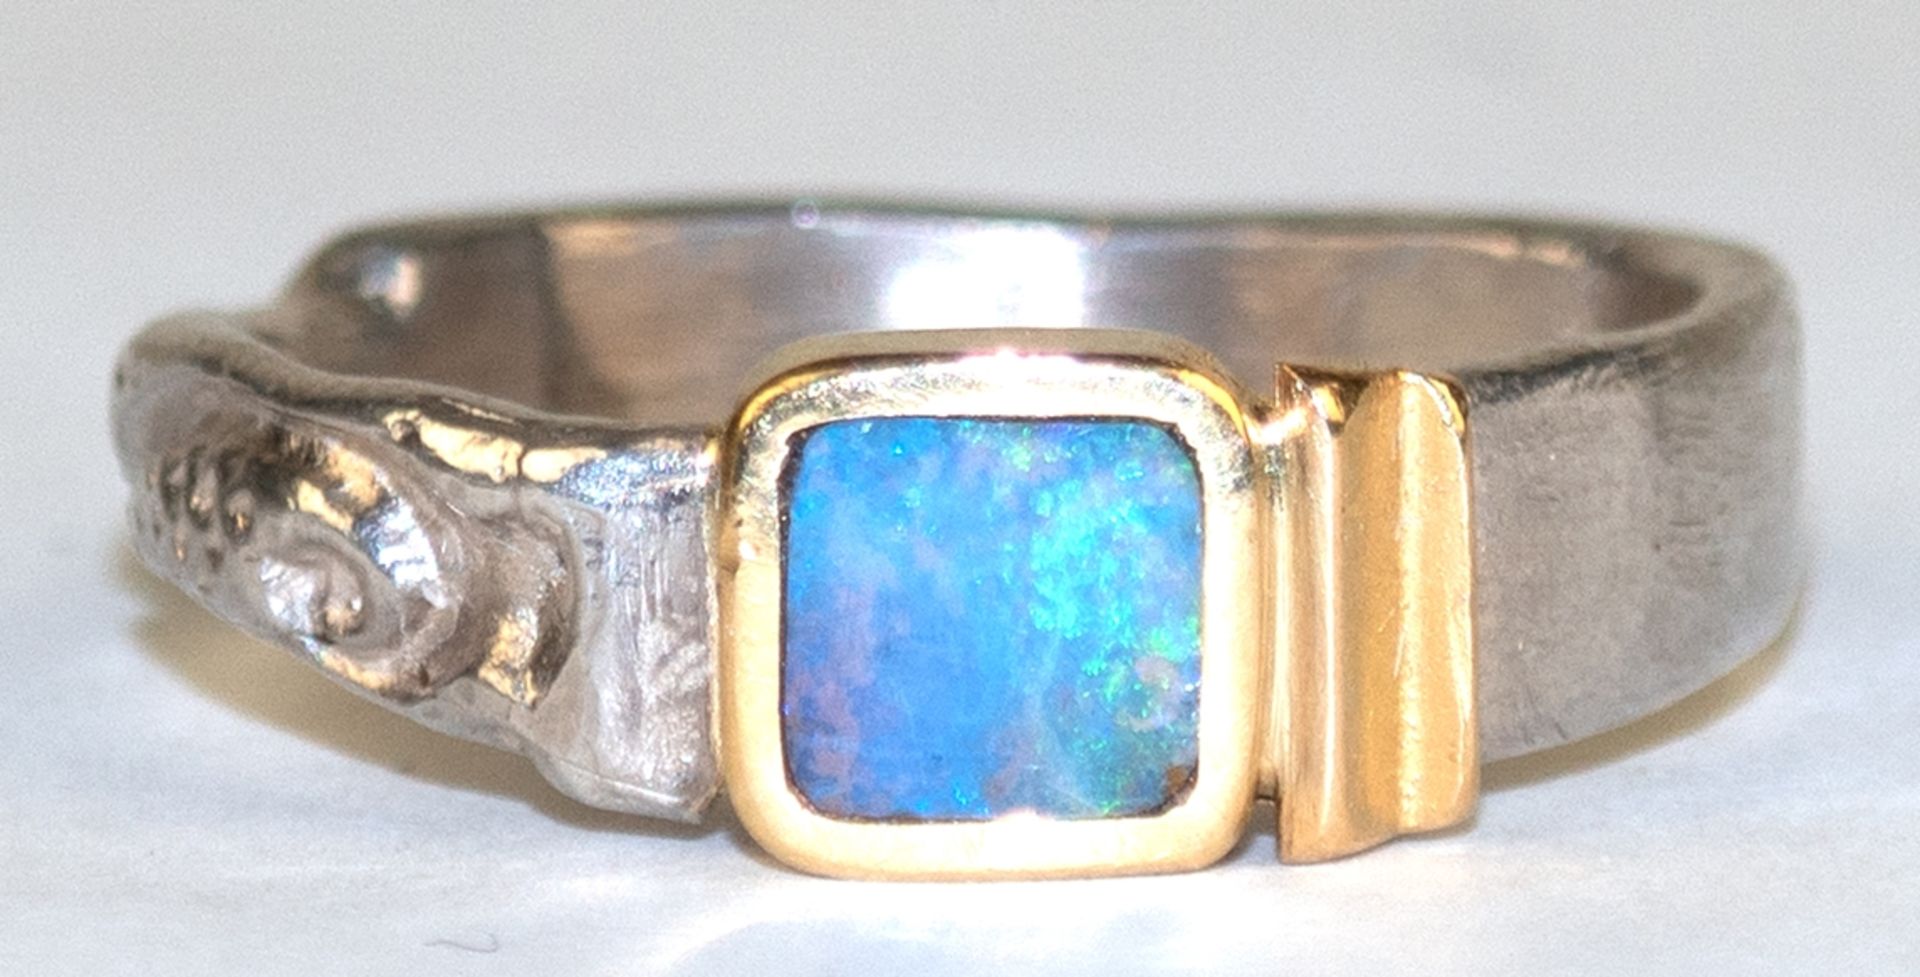 Ring, 750er GG -Ringkopf mit quadratischem Opal, 925er Ringschiene, ges. 6,7 g, RG 62